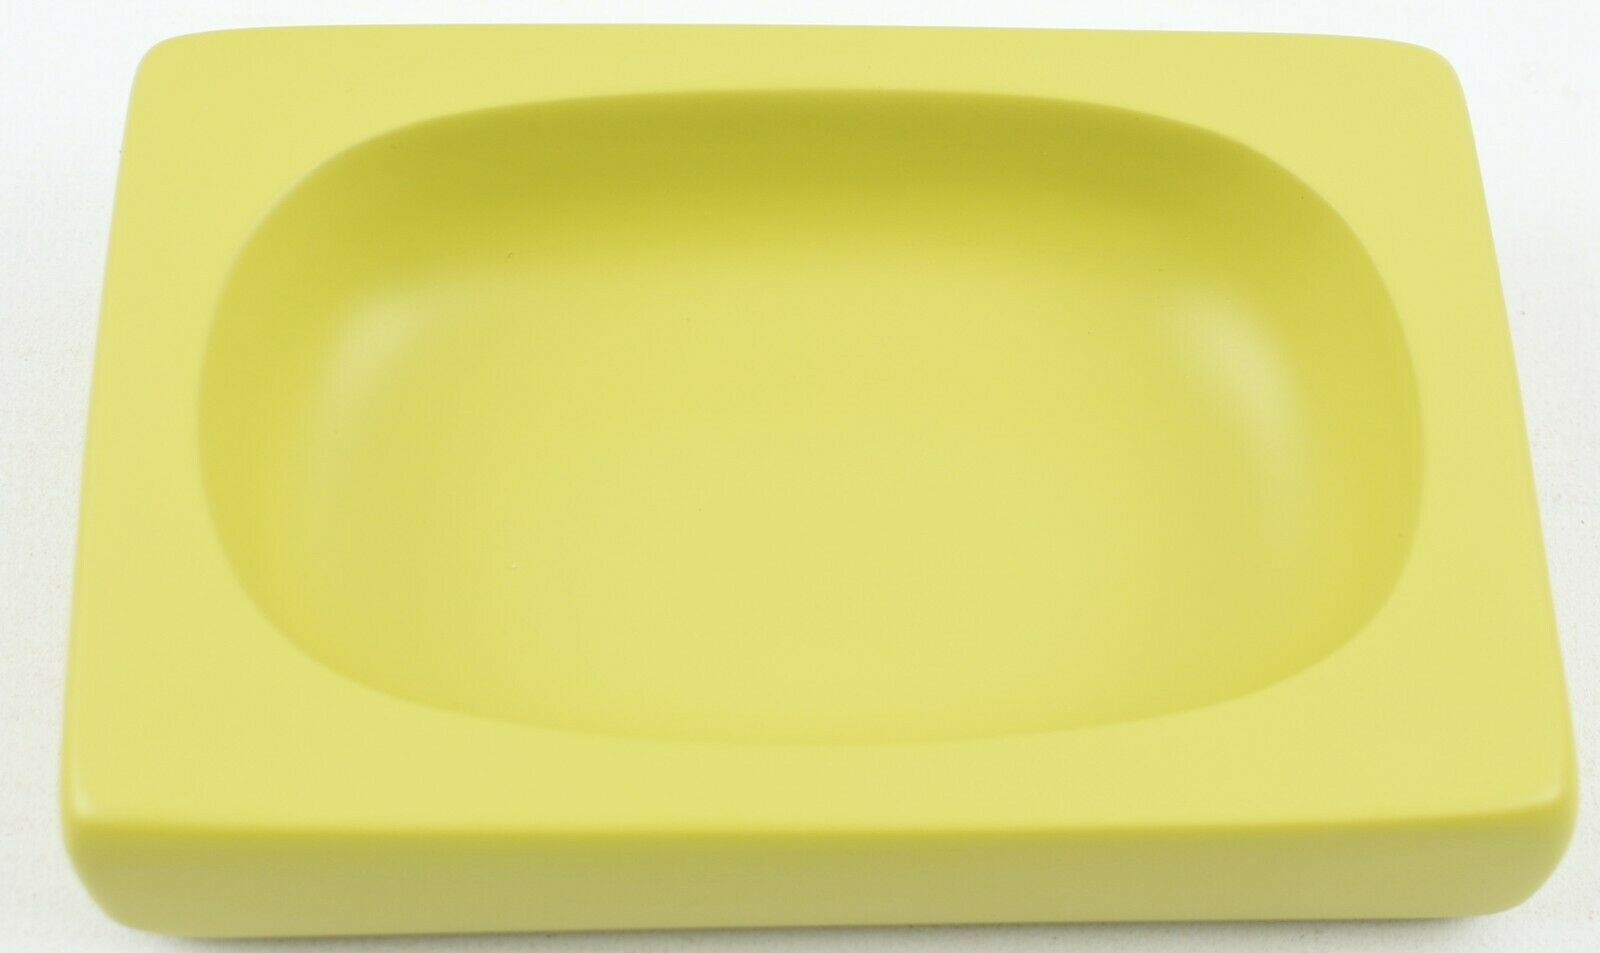 HABITAT - POLI Soap Dish (design by Anna Pretty), Saffron Yellow